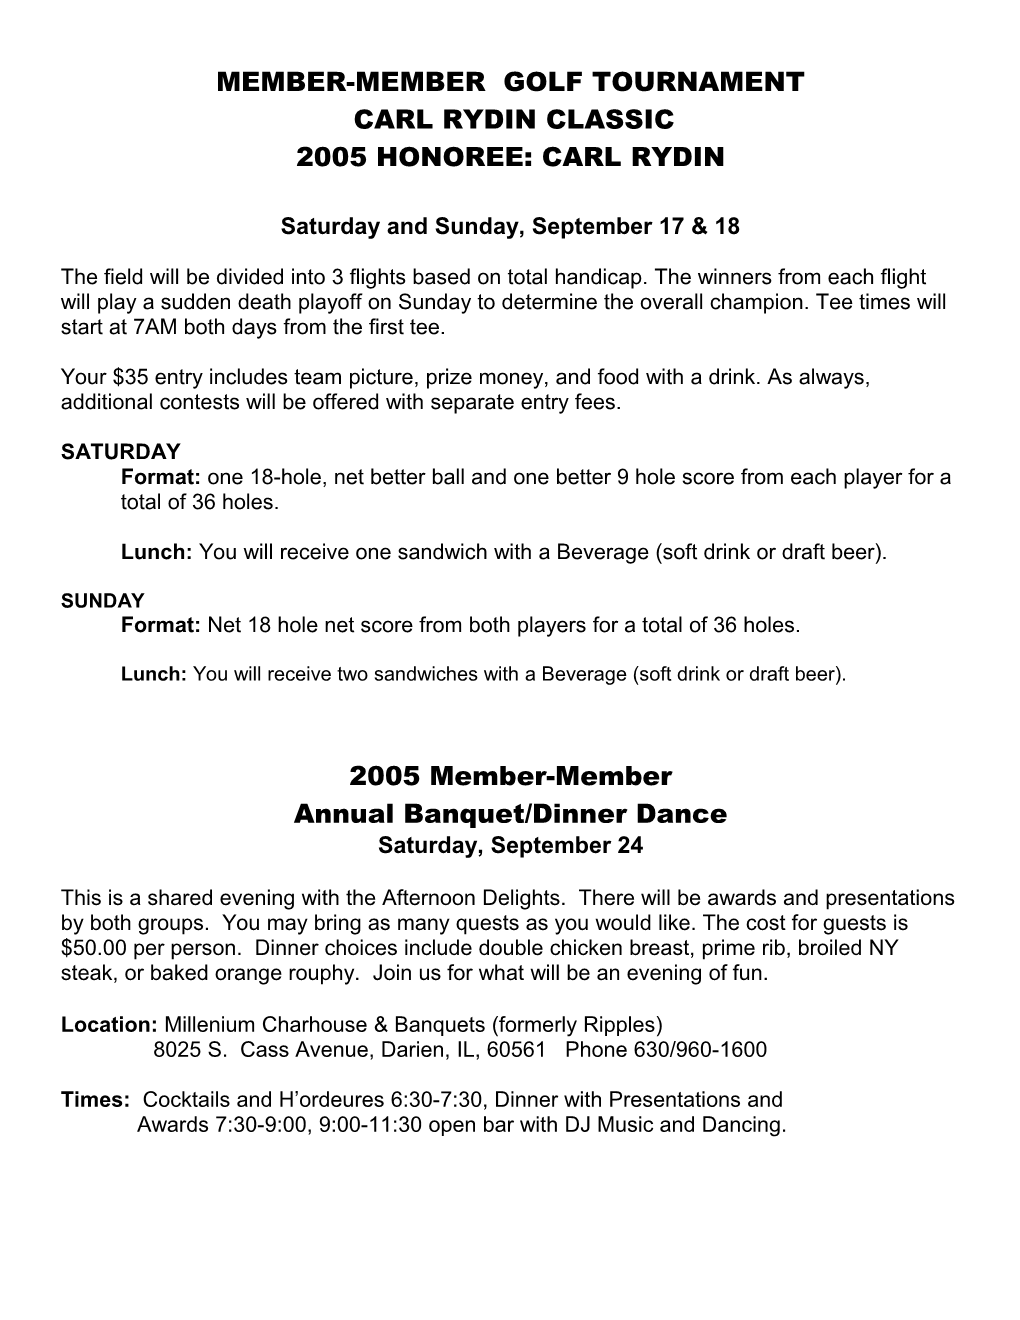 Member-Member Golf Tournament